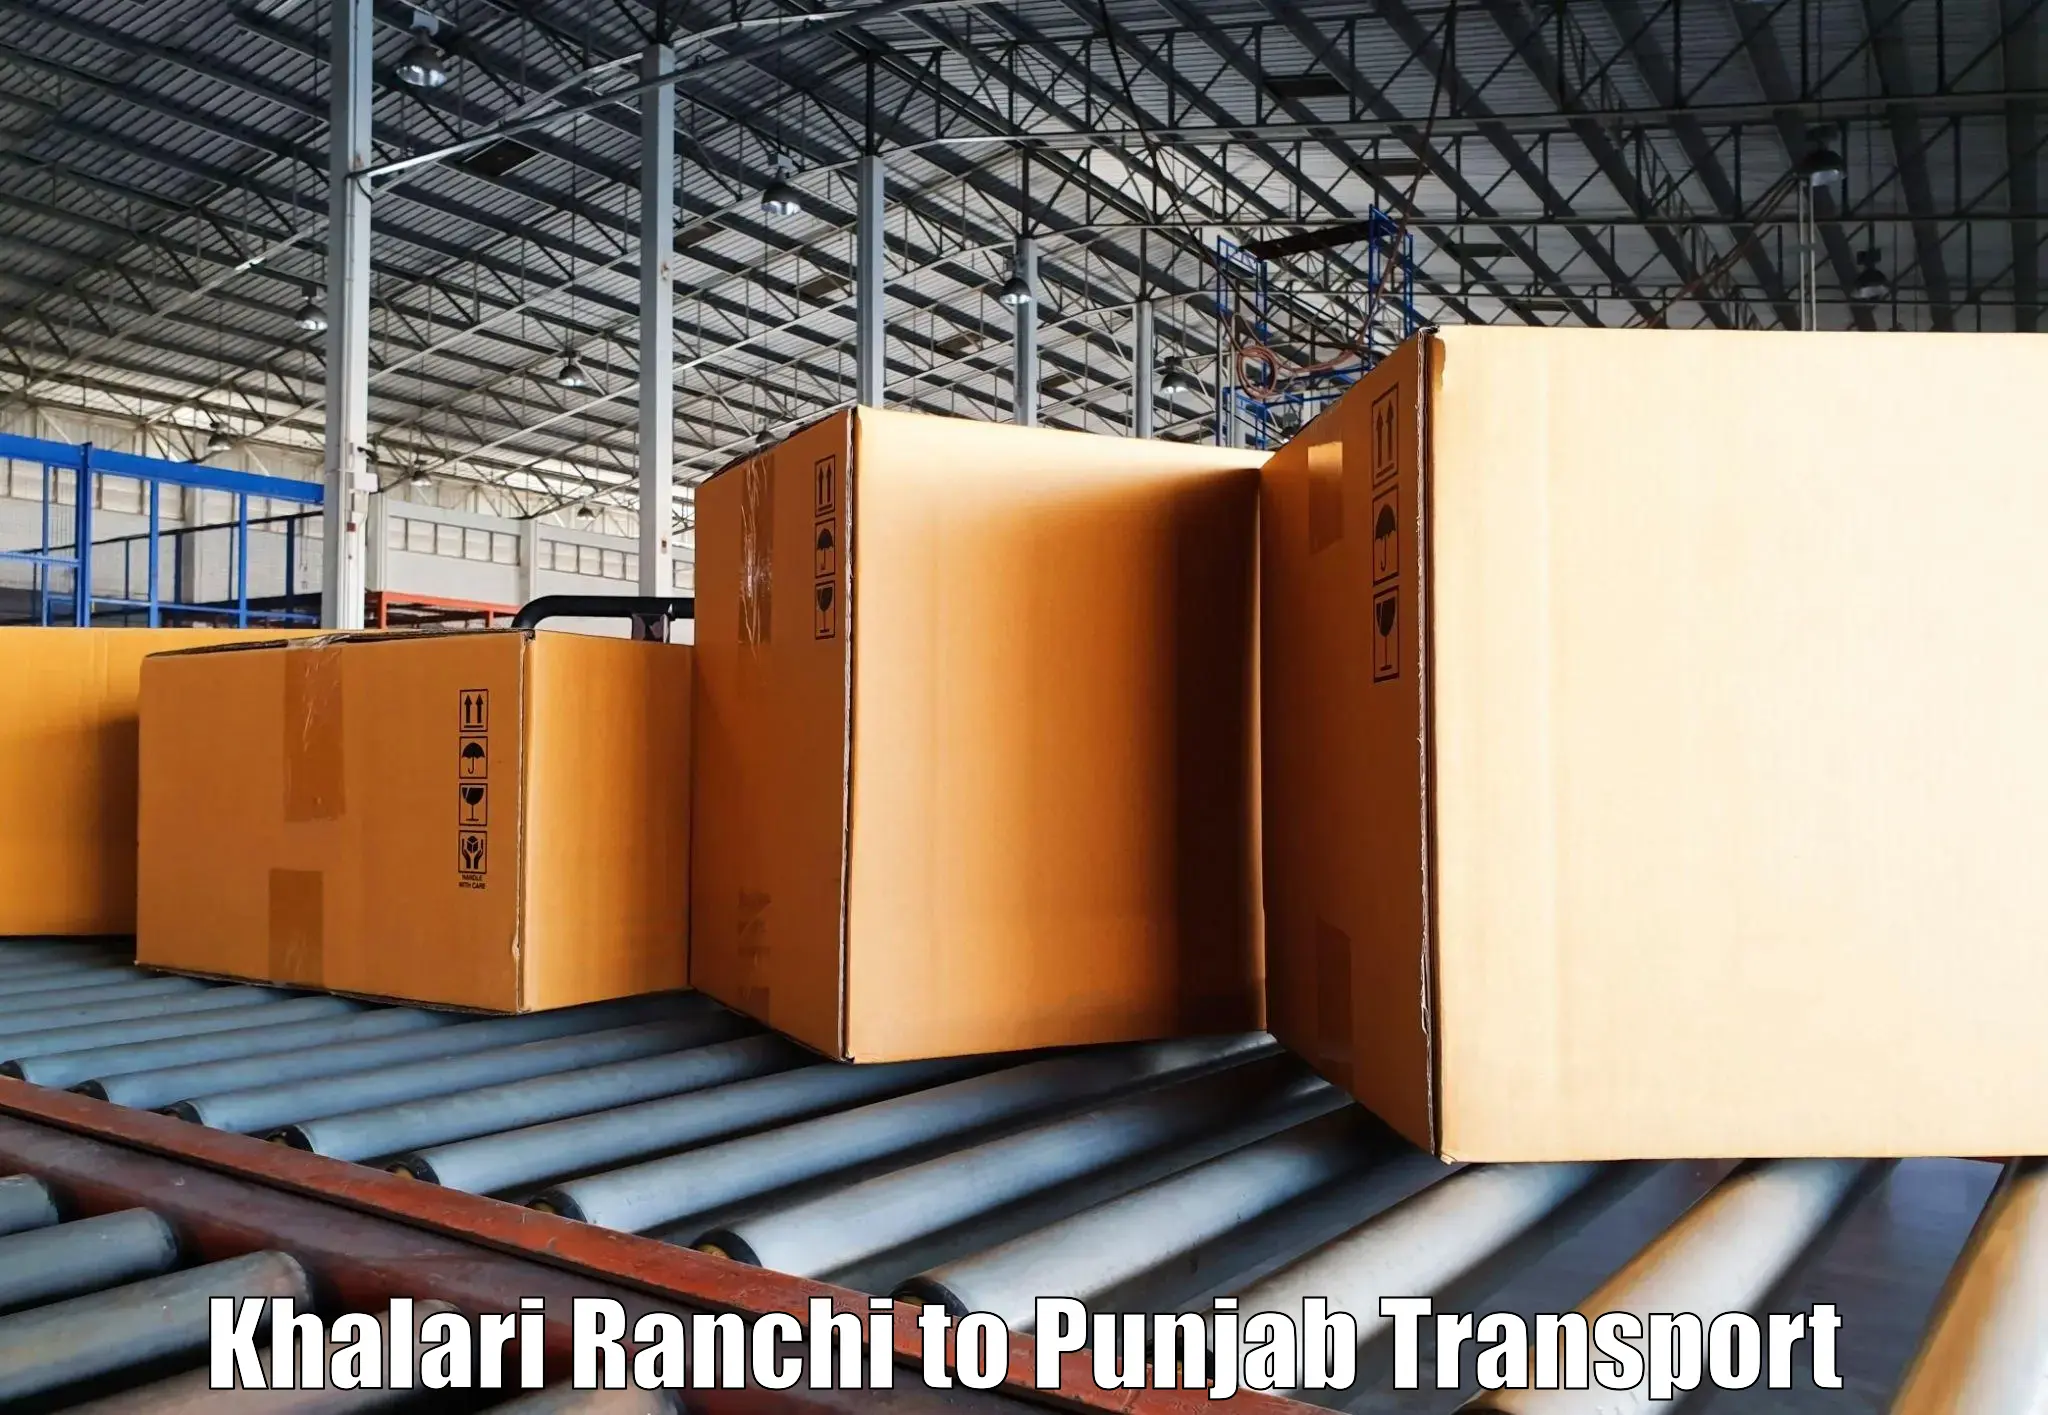 Bike shipping service Khalari Ranchi to Punjab